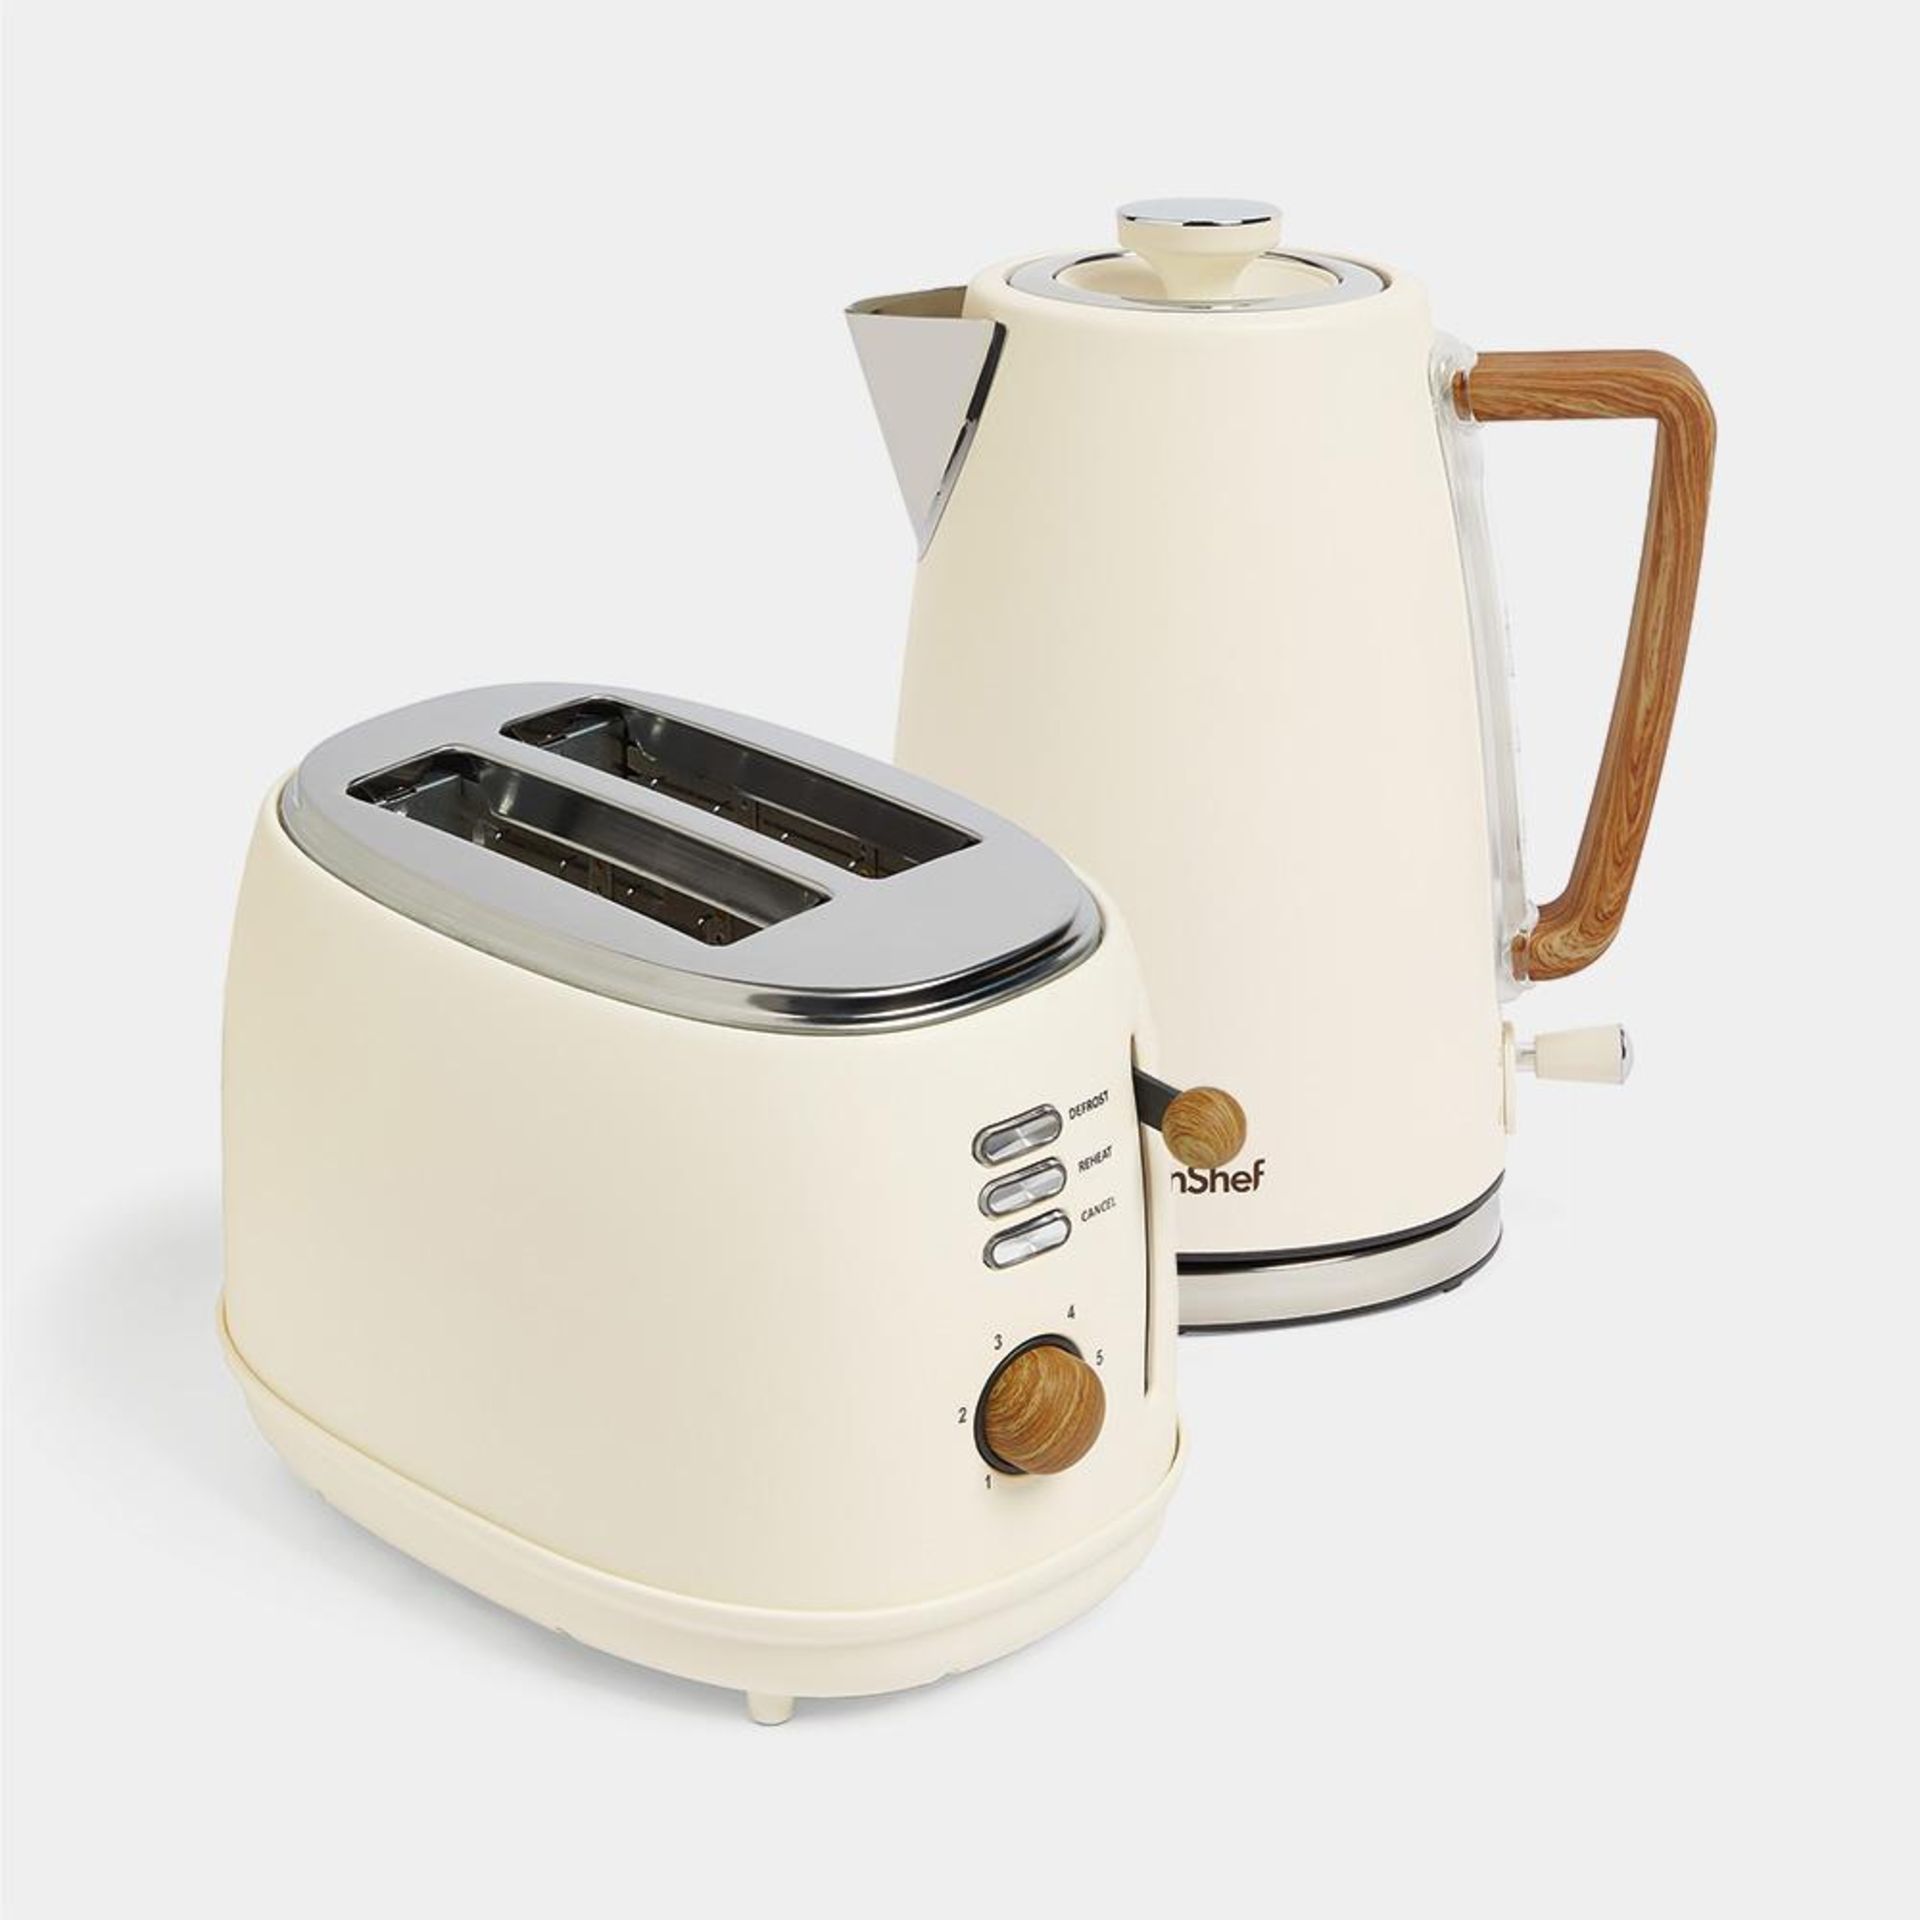 Cream & Wood Kettle & Toaster Set - Luxury - ER50. Cream & Wood Kettle & Toaster SetWith a Nordic-